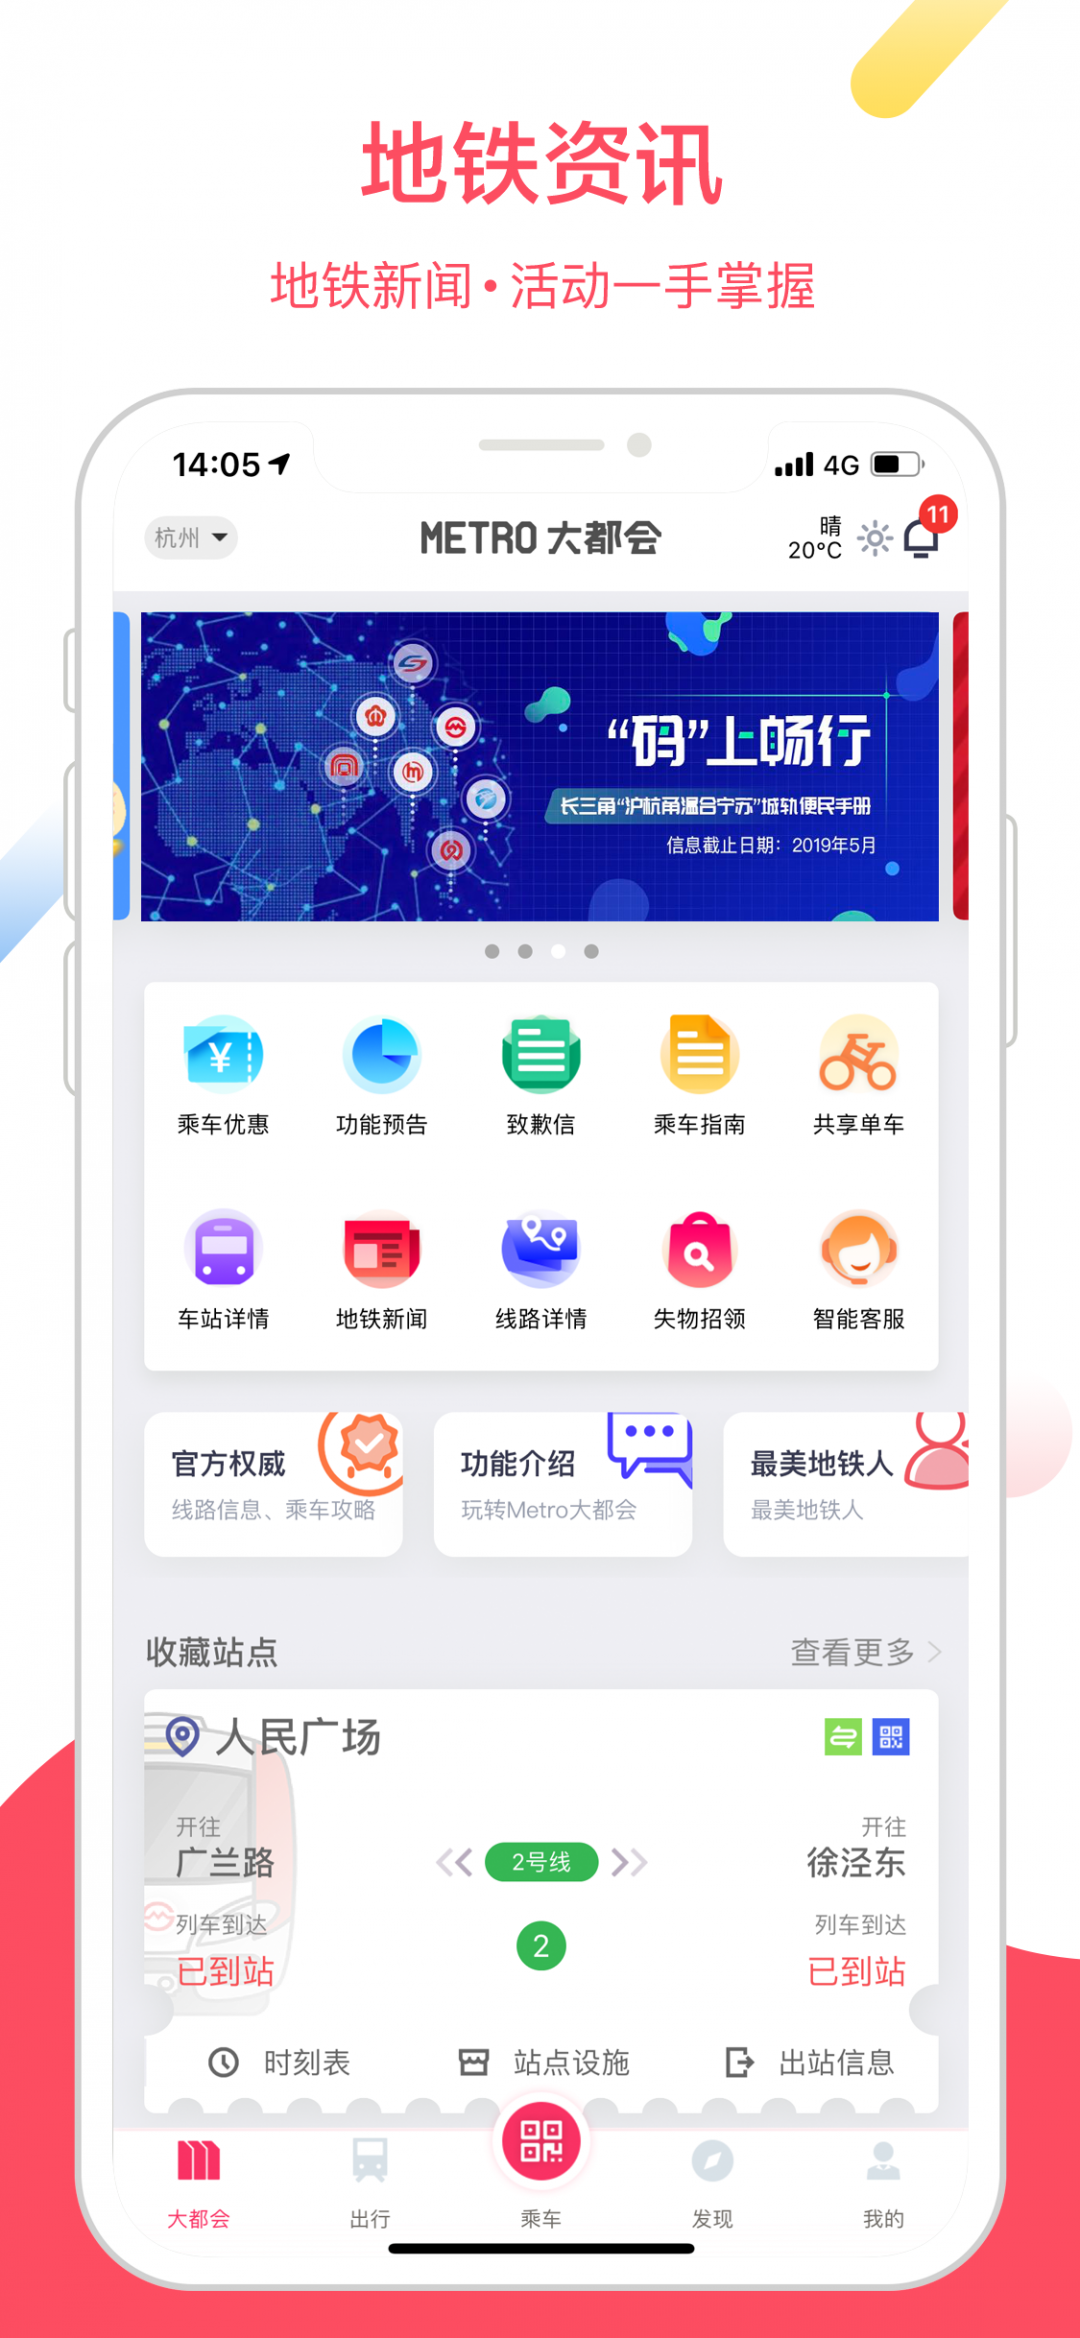 上海大都会app地铁下载最新版截图1